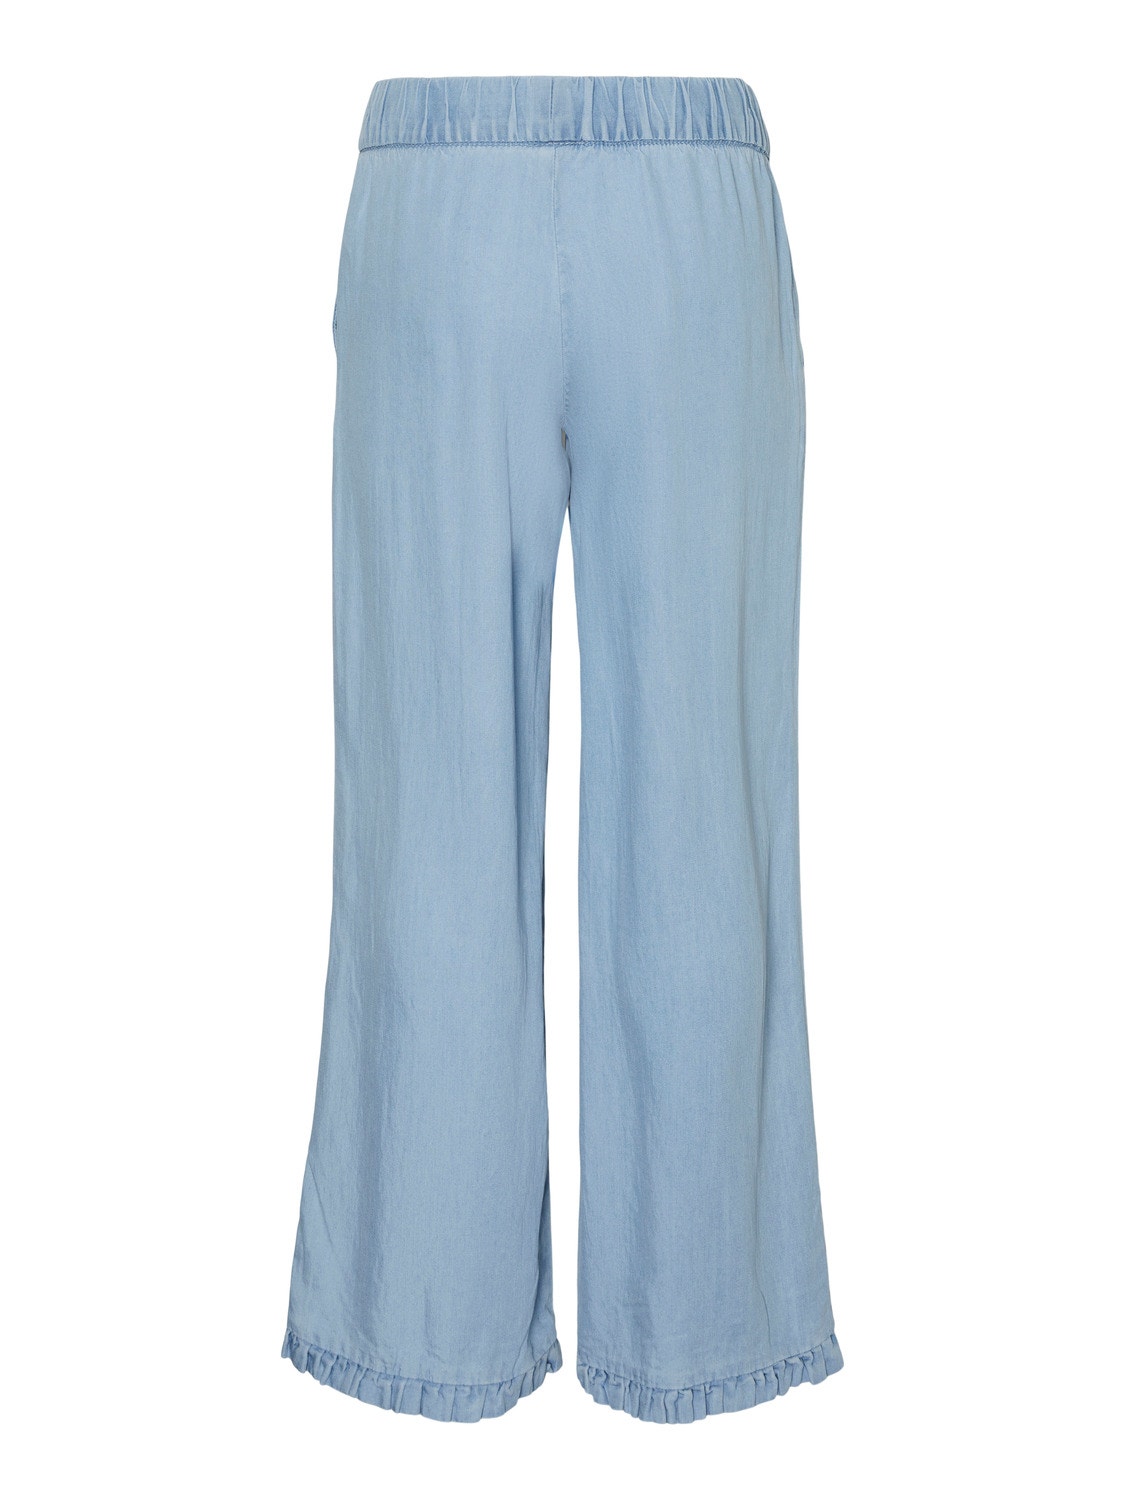 Vero Moda VMHARPER Trousers -Light Blue Denim - 10283853